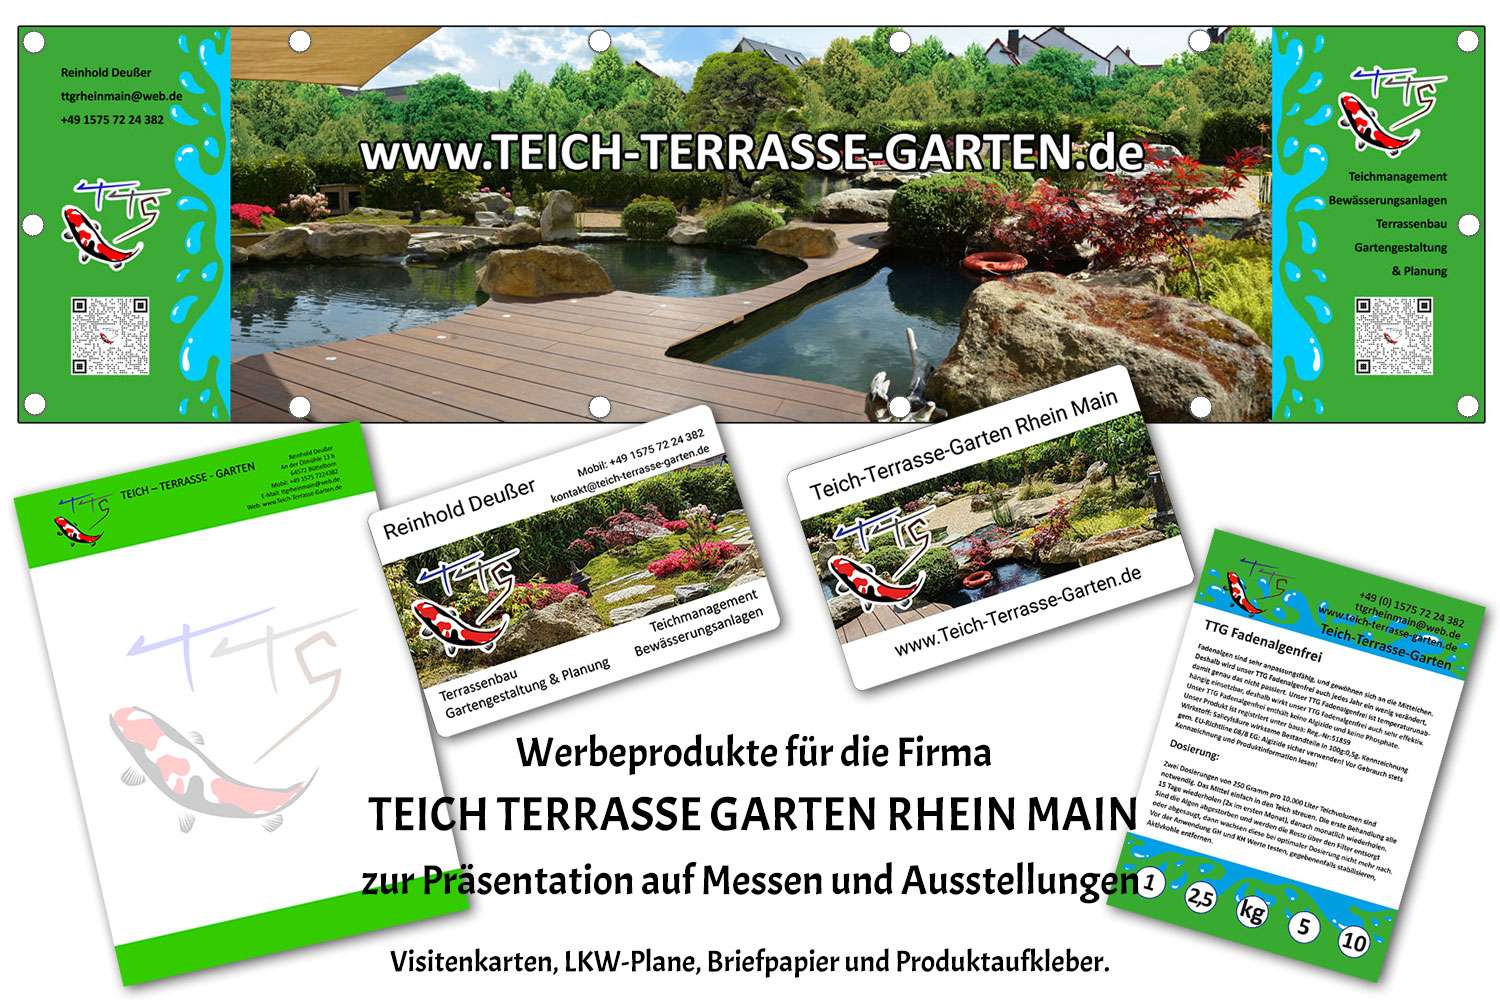 Teich-Terrasse-Garten